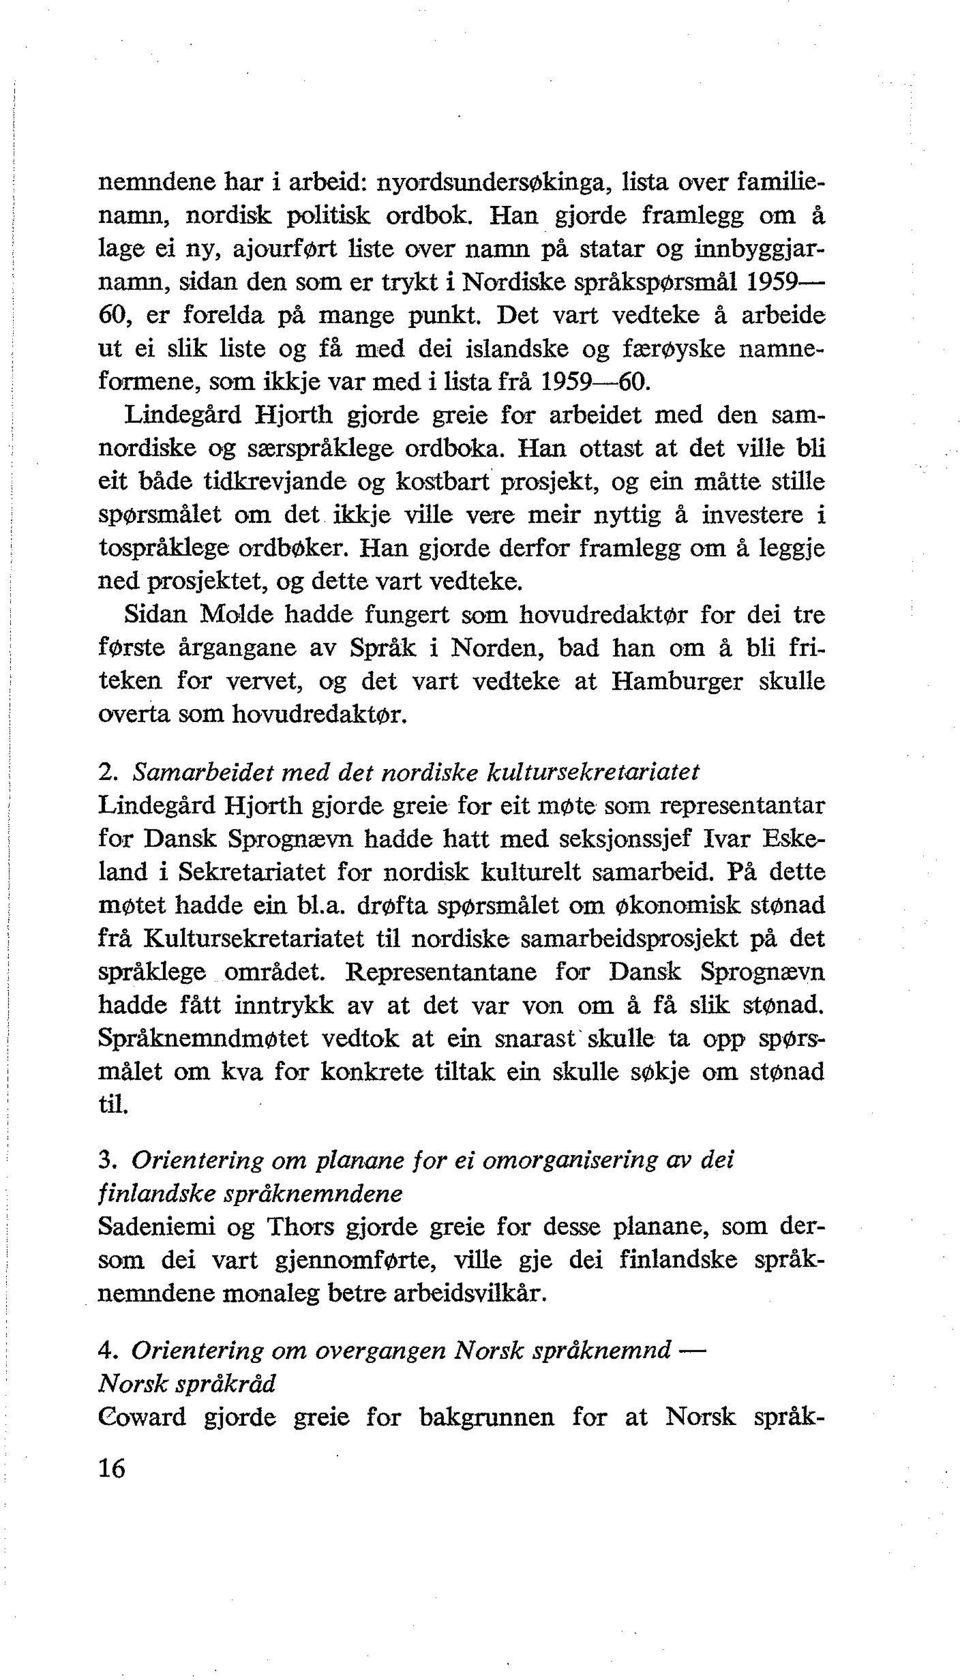 Det vart vedteke å arbeide ut ei slik liste og få med dei islandske og færøyske namneformene, som ikkje var med i lista frå 1959-60.